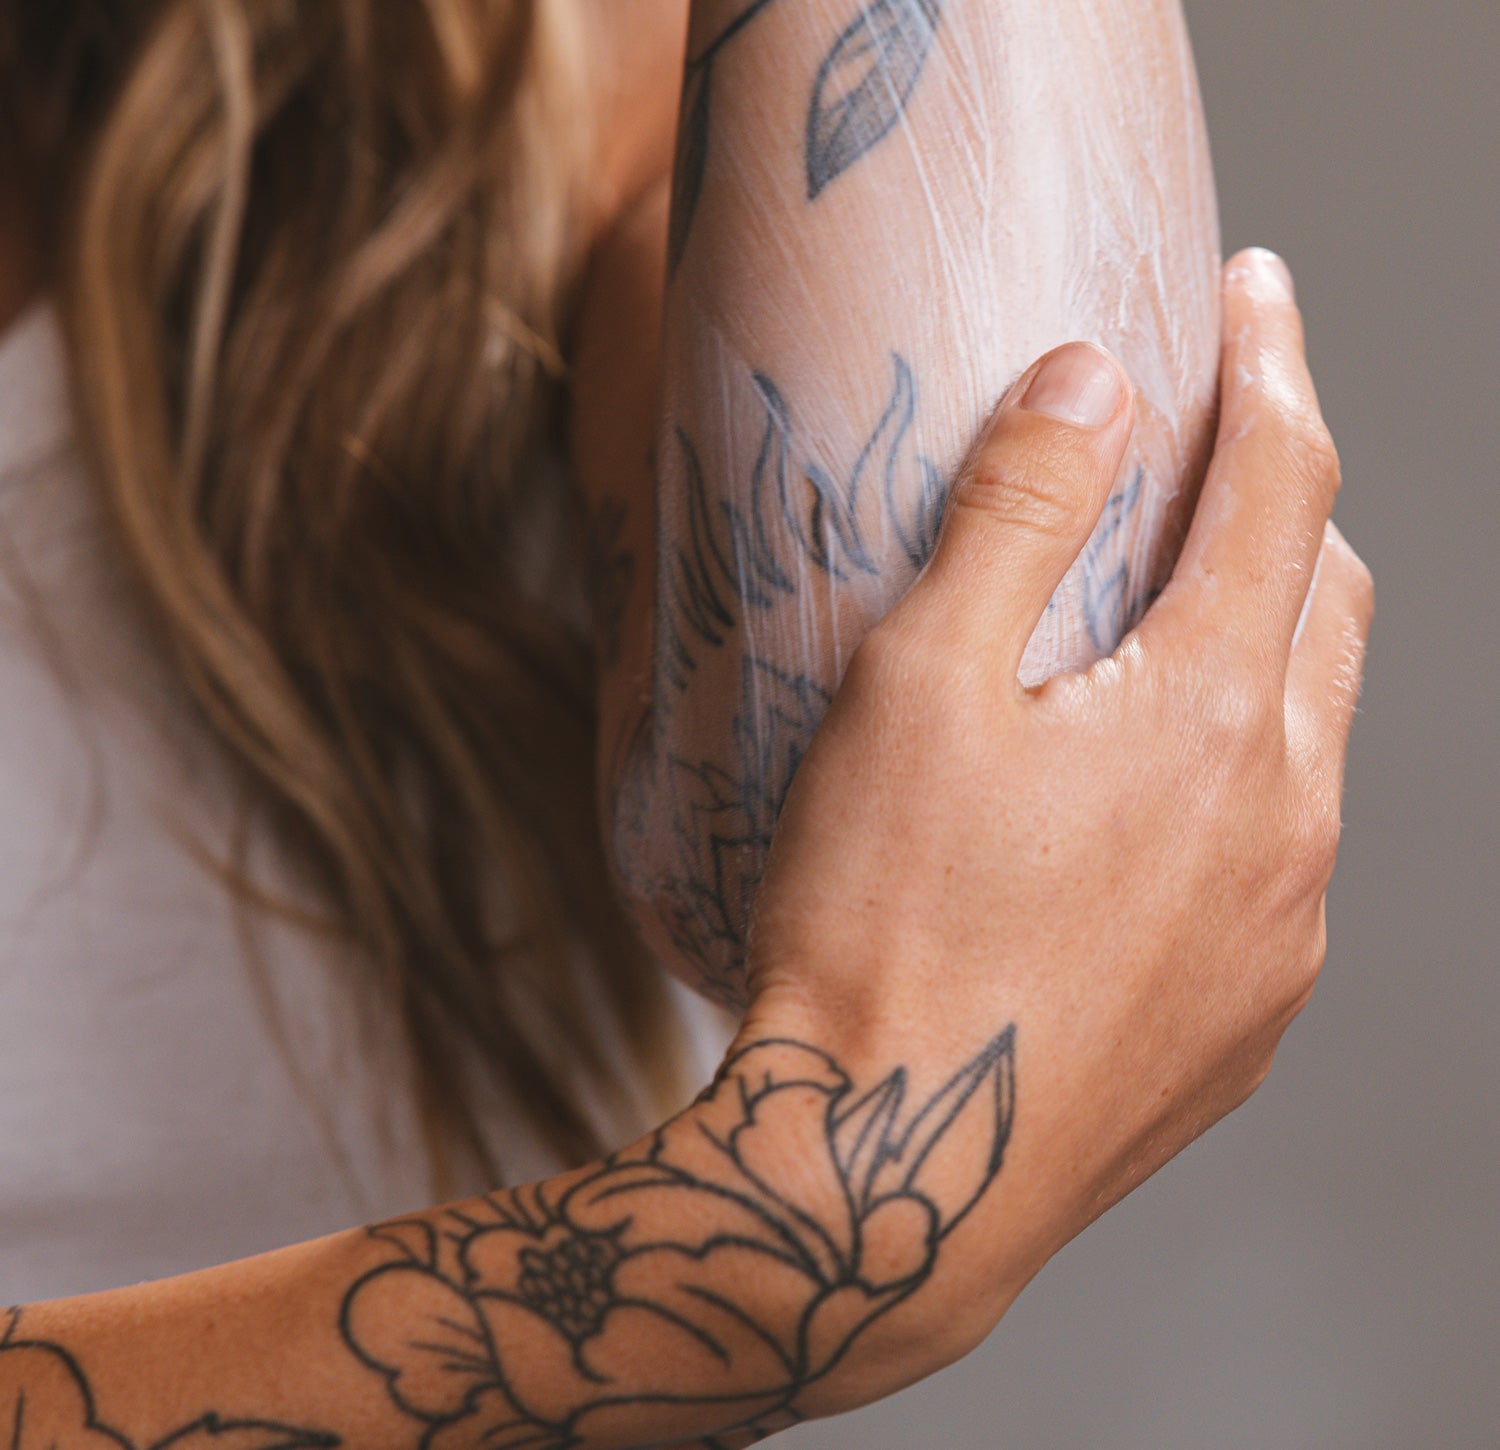 Tattooed Nurse | Blonde tattooed nurse with full sleeve tatt… | Flickr